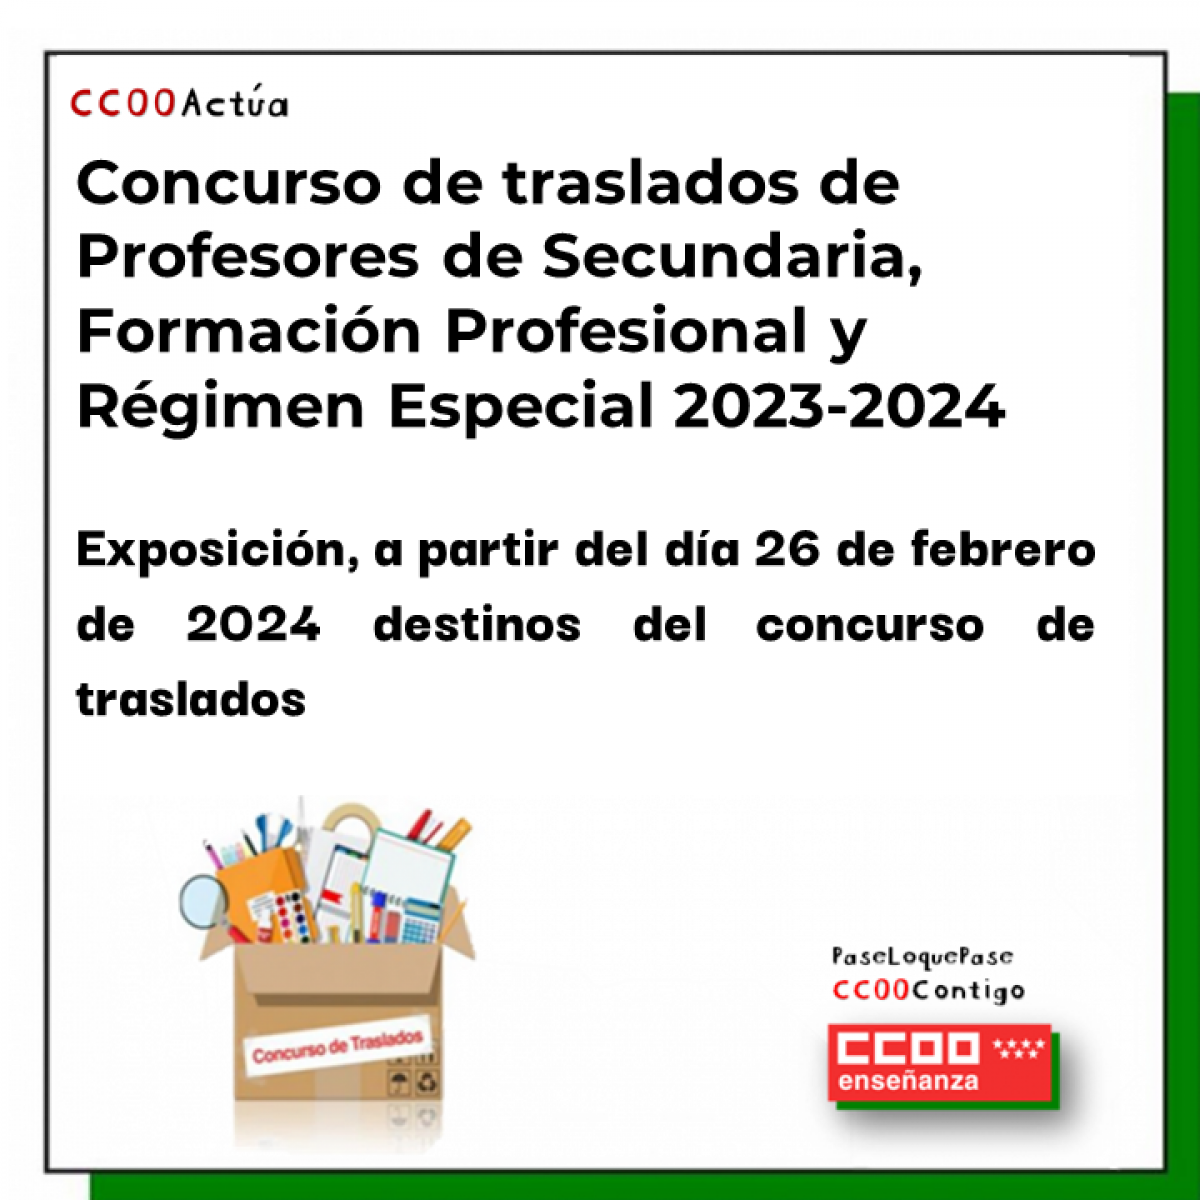 Concurso de traslados de Profesores de Secundaria, Formacin Profesional y Rgimen Especial 2023-2024